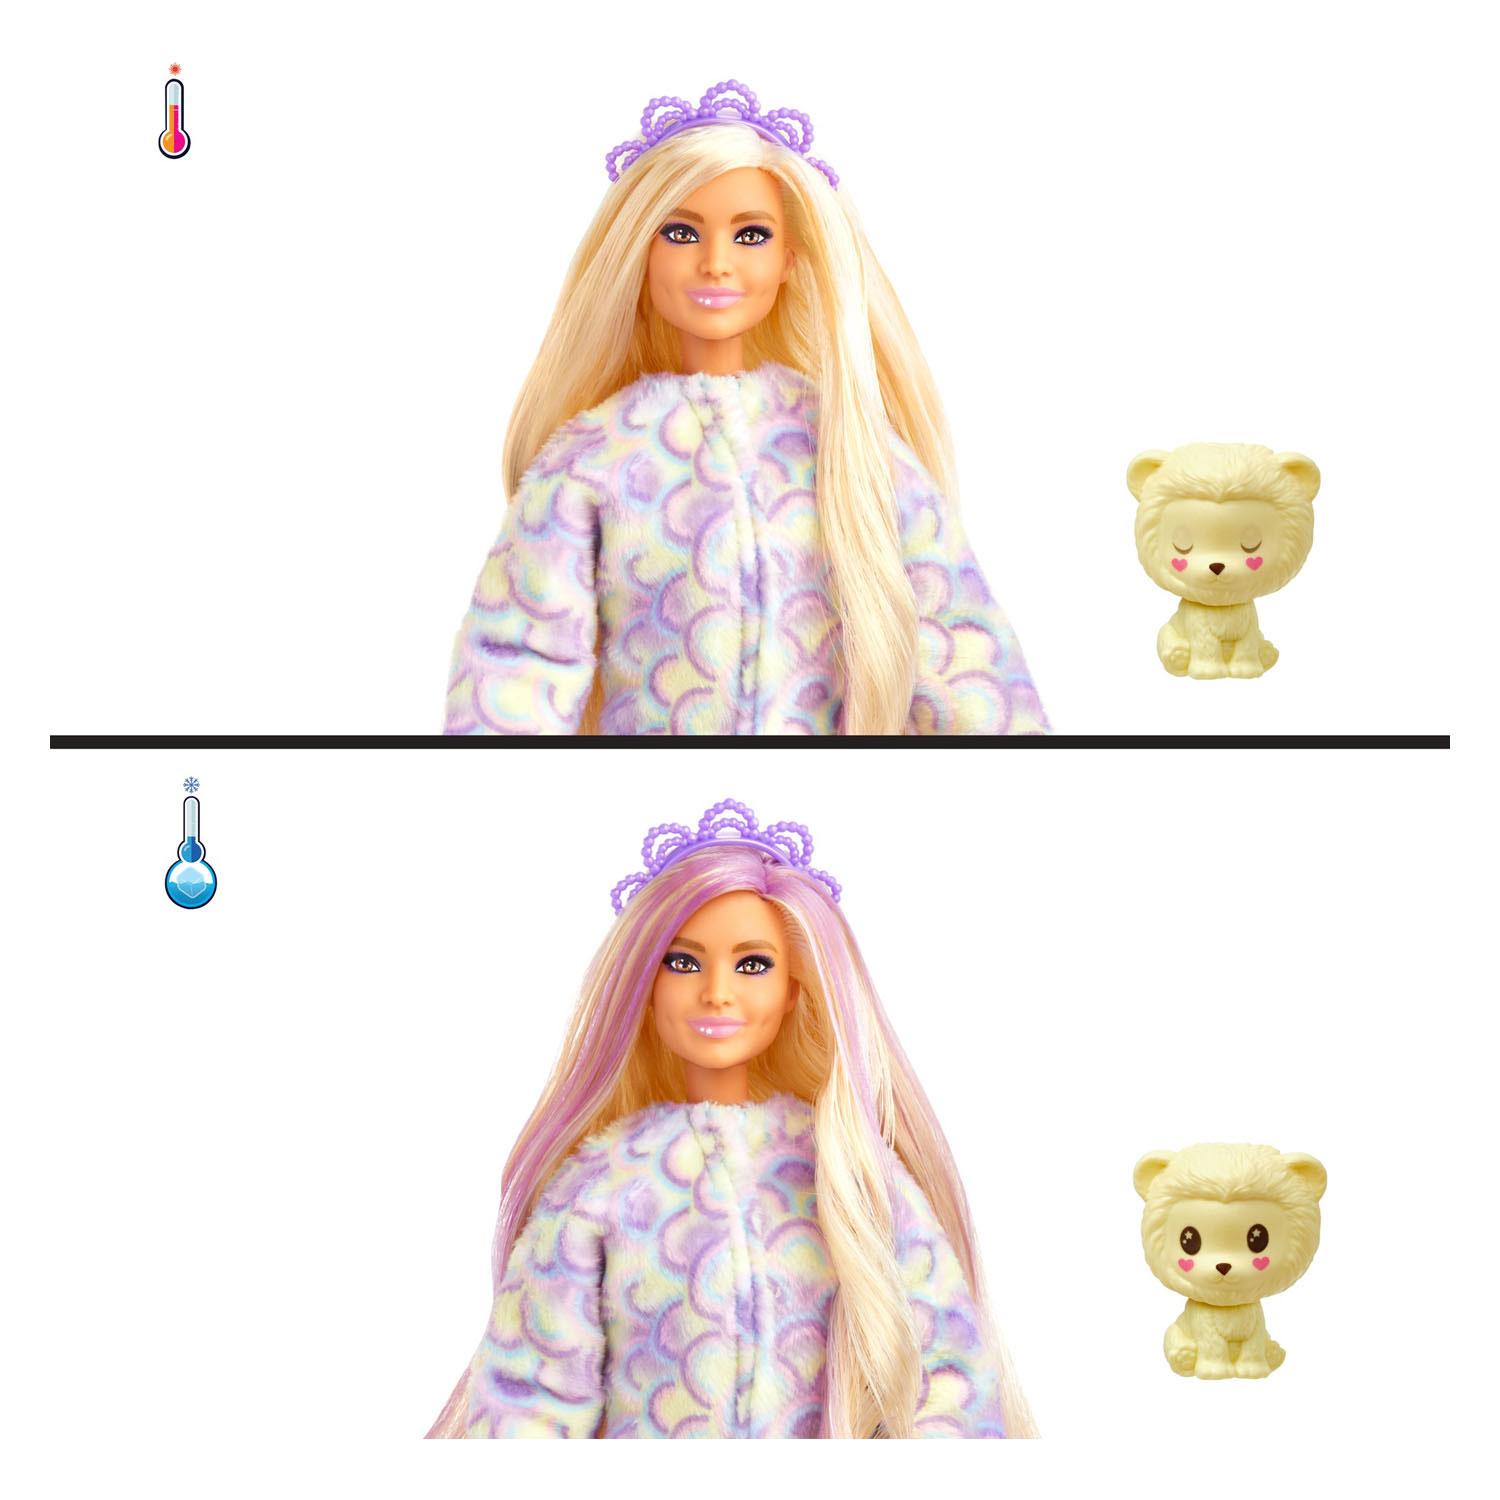 Cutie Reveal Barbie Doll Cozy Cute Tees Series – Löwe